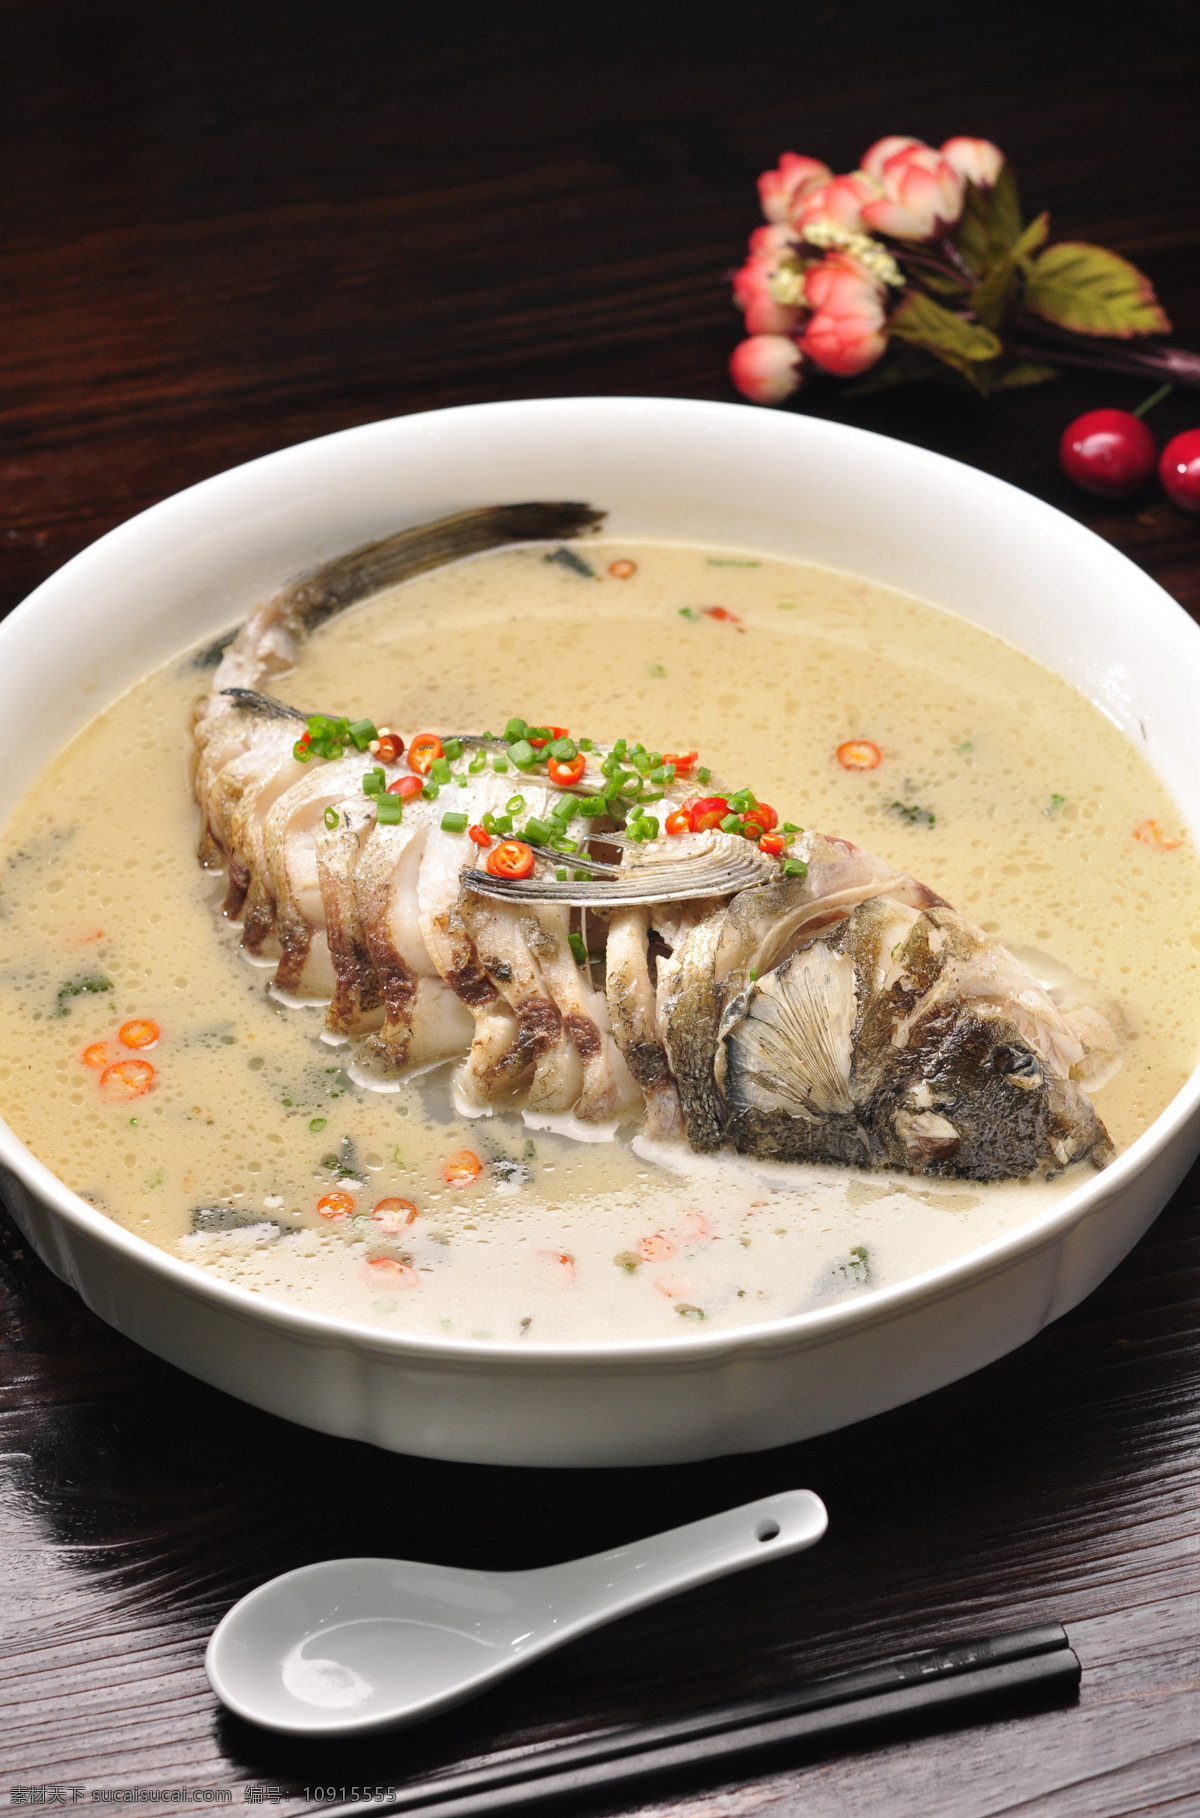 鲫鱼汤 炖鱼 清炖鱼 营养 美味 餐饮美食 传统美食